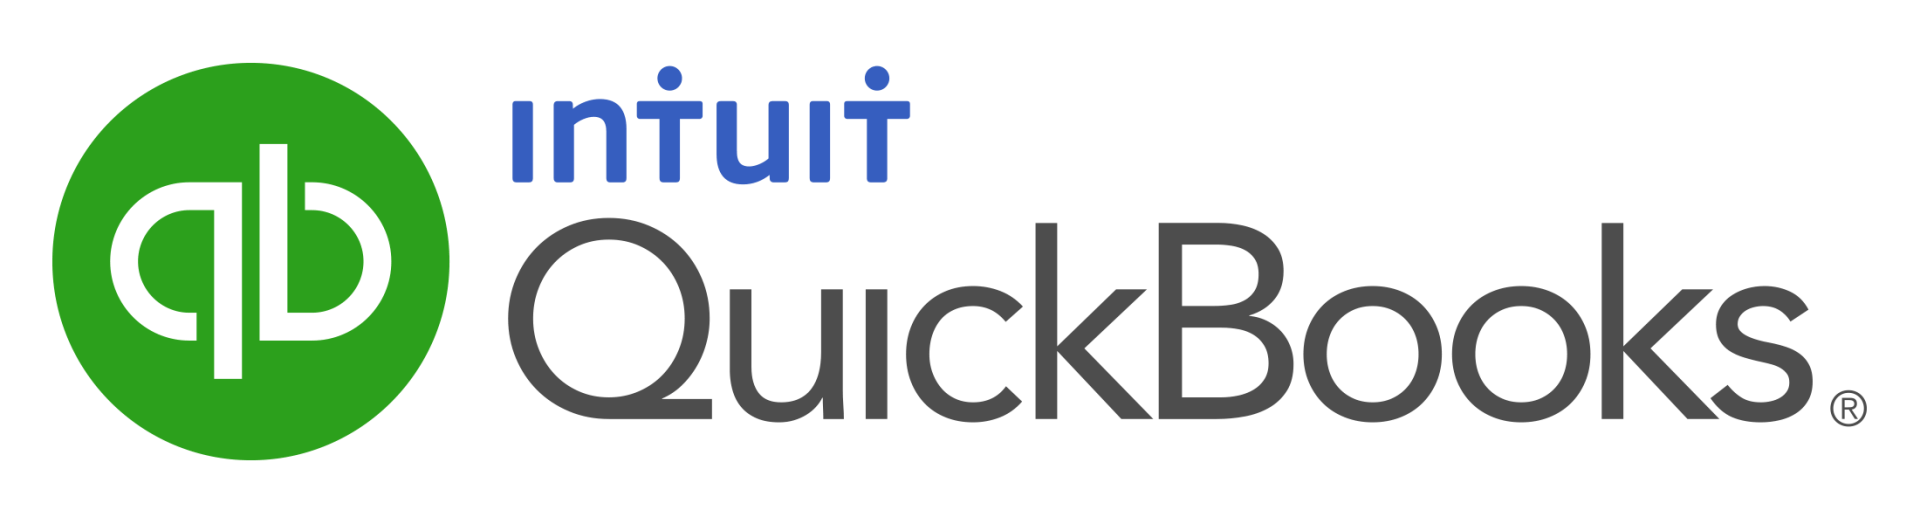 Intuit quick books logo